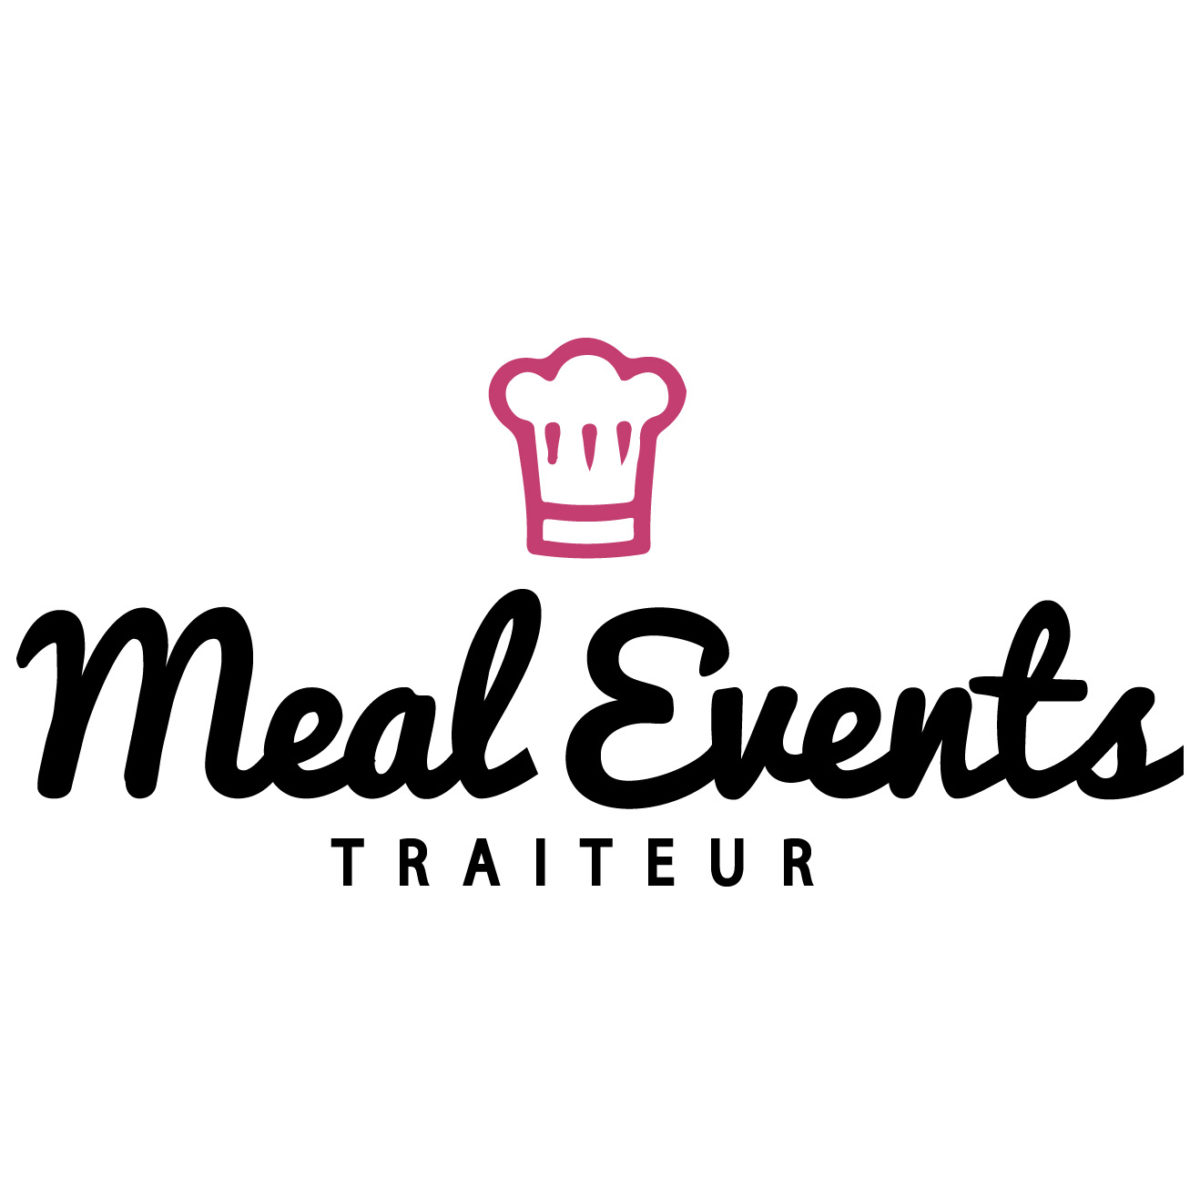 Meal Events Traiteur